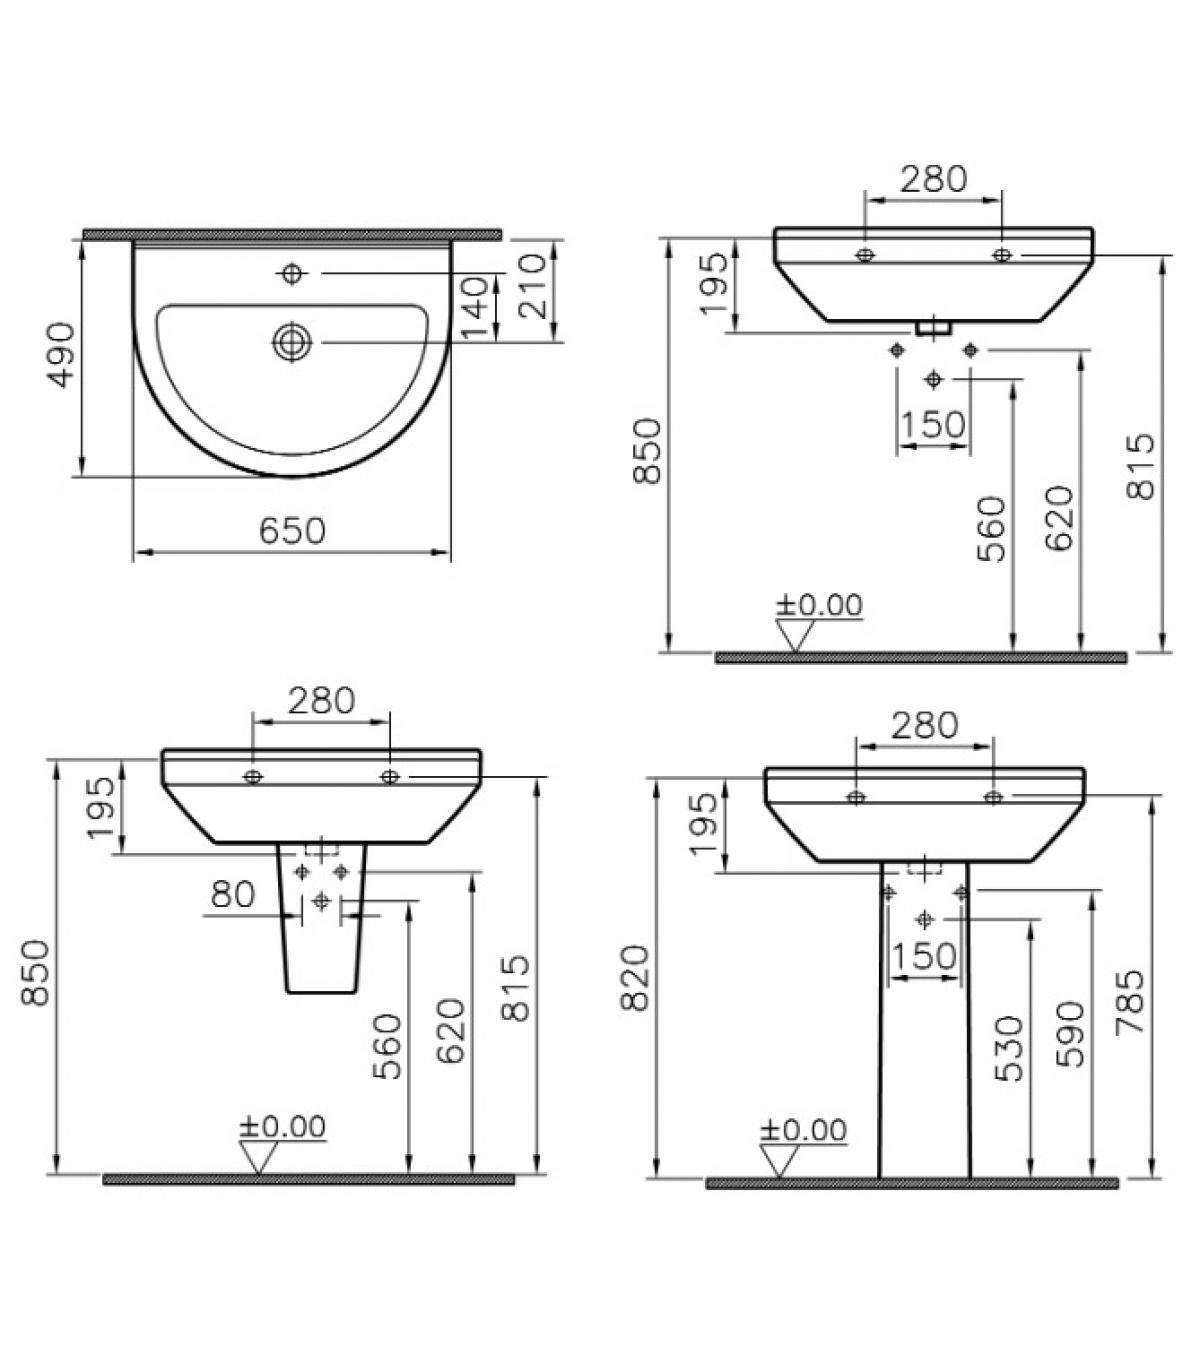 Как выбрать оптимальные размеры под раковину в ванную комнату